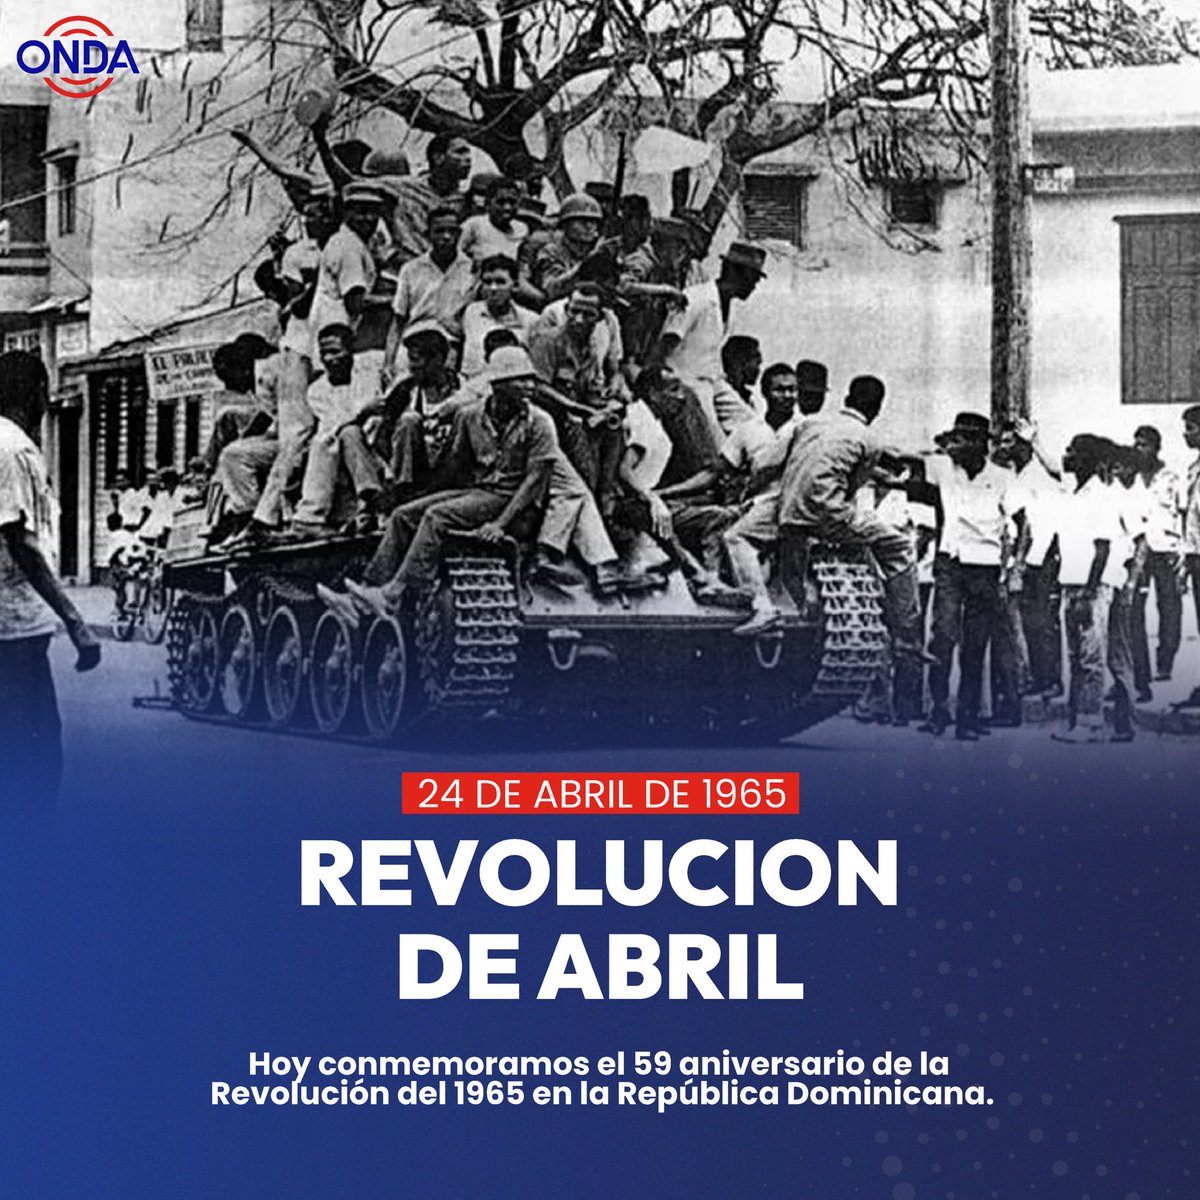 'Conmemoramos un capítulo crucial de nuestra historia: LA Revolución del 65. Entre el 24 de abril y el 3 de septiembre de 1965, Santo Domingo fue testigo de una lucha por la democracia y la libertad. Recordamos a aquellos que lucharon por un futuro justo y próspero para la RD🇩🇴